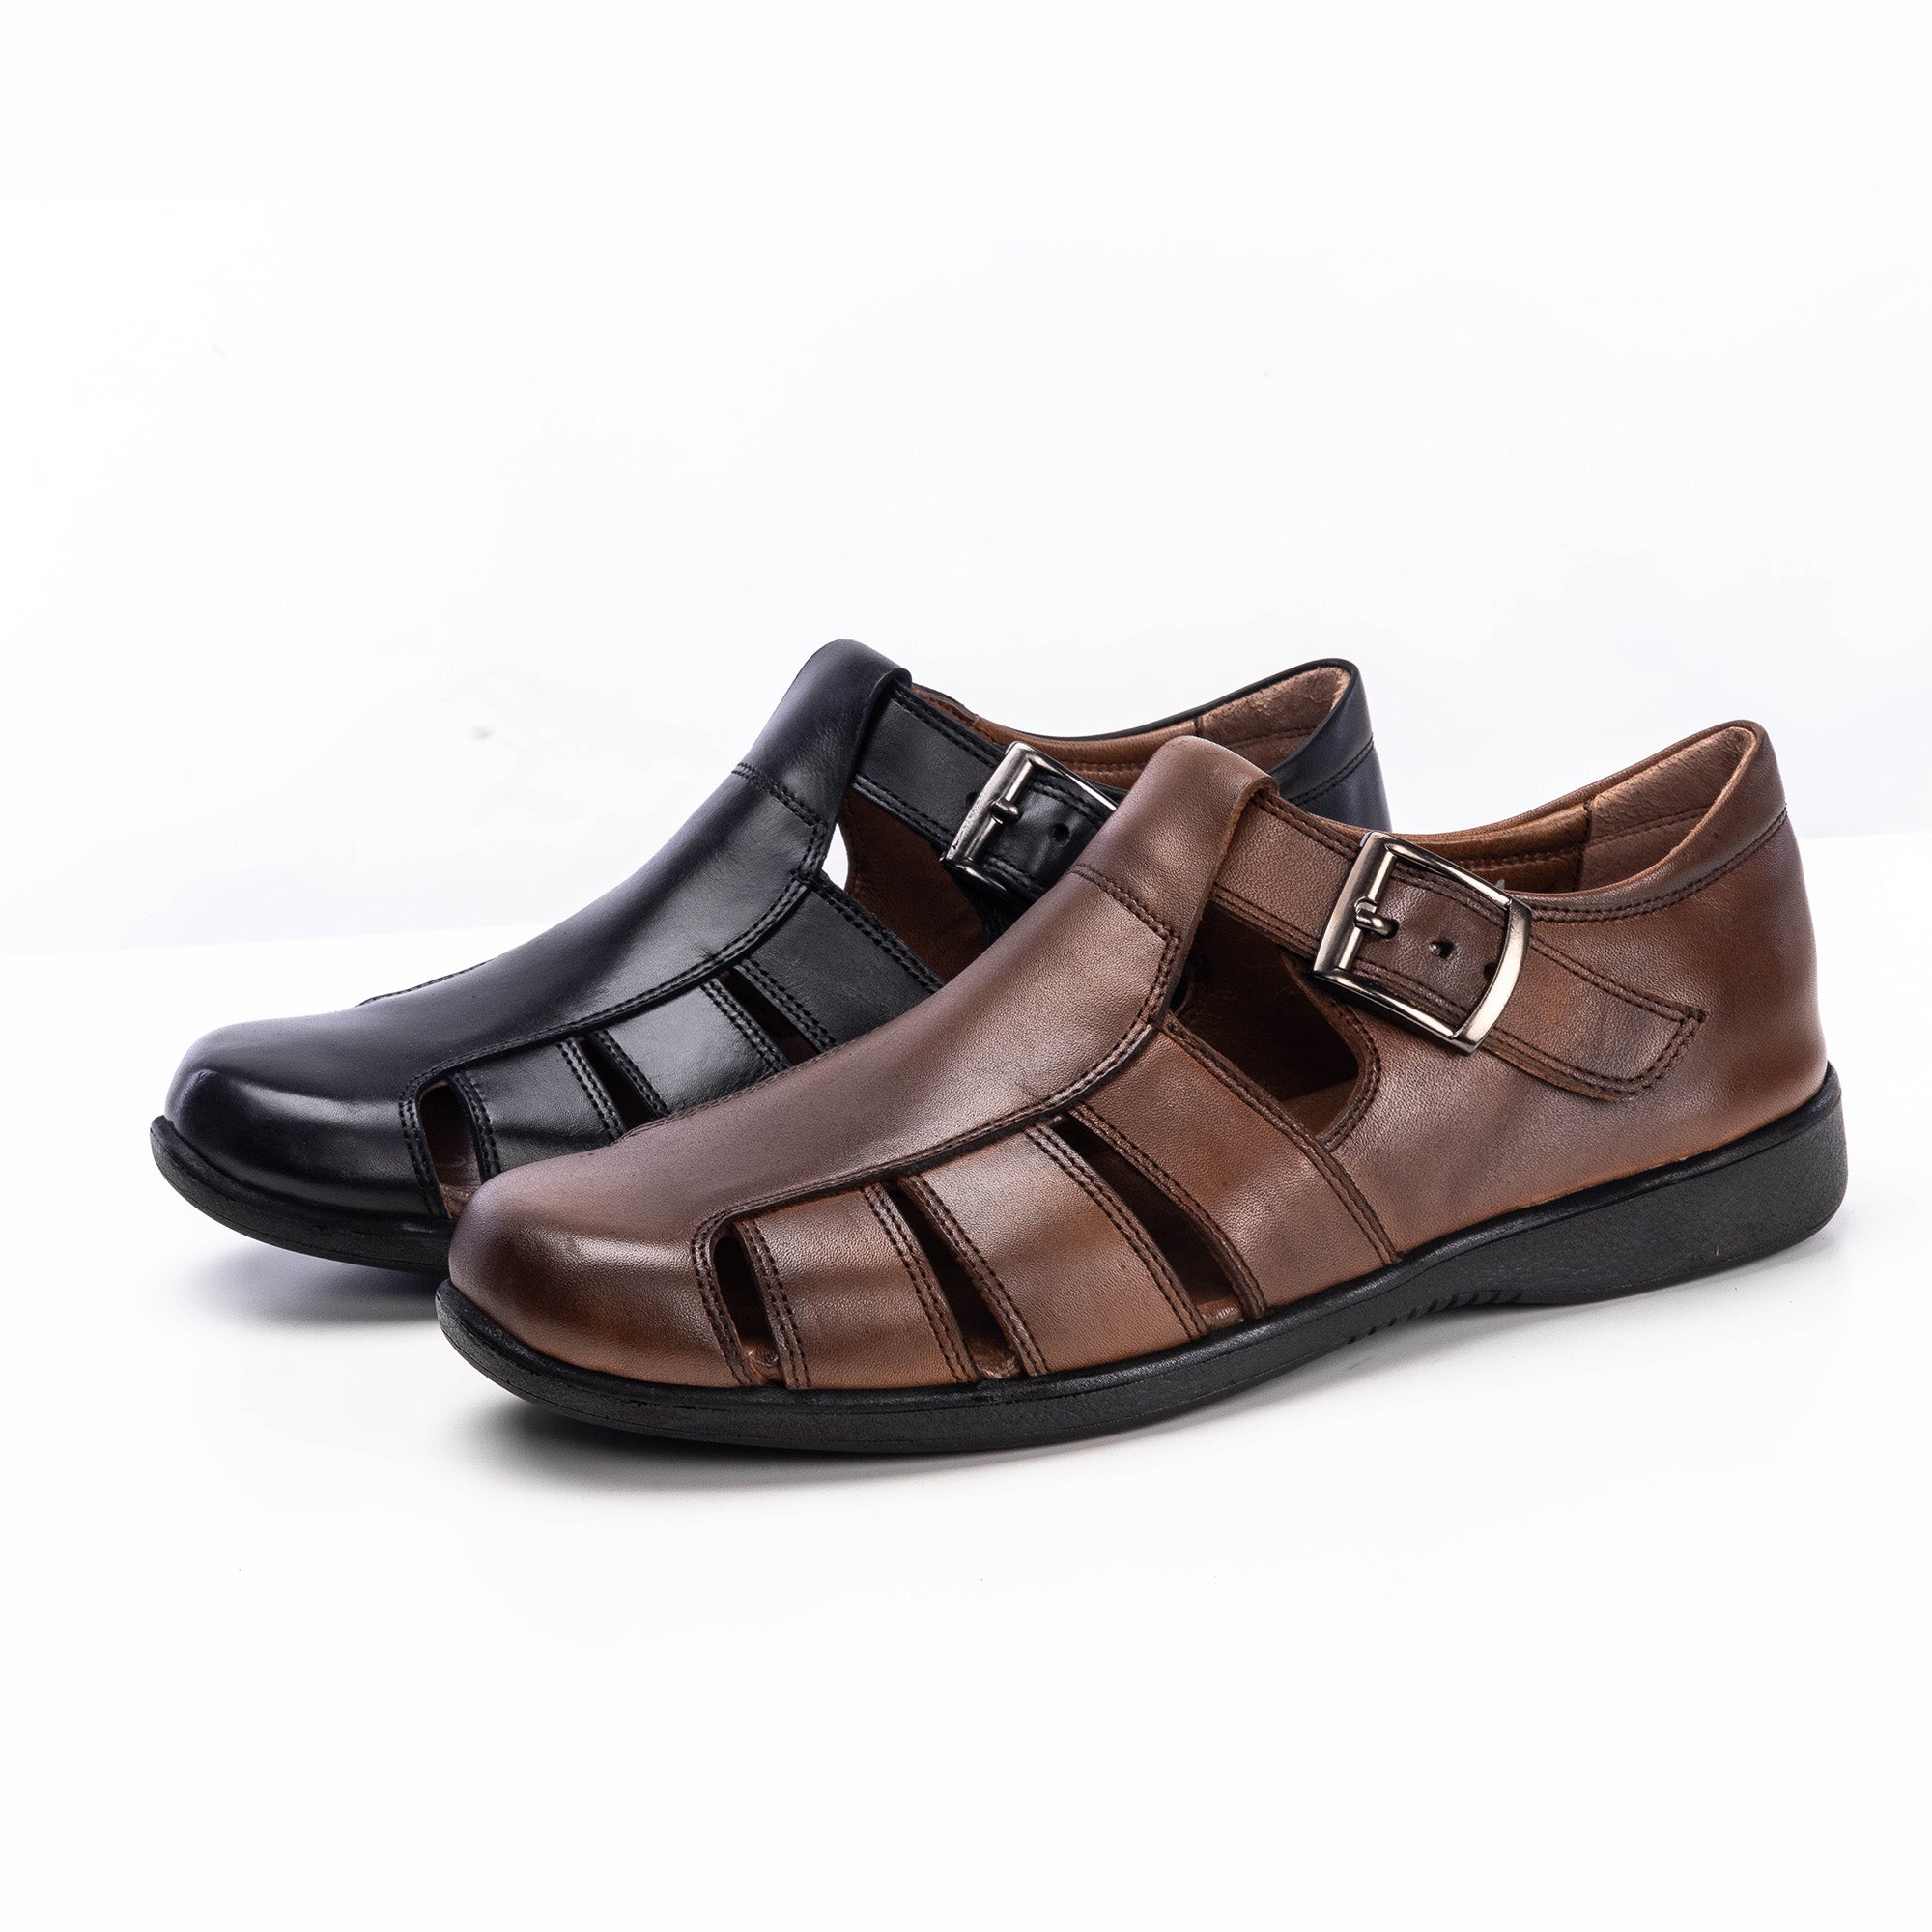 '''5211 Sandale en cuir noir